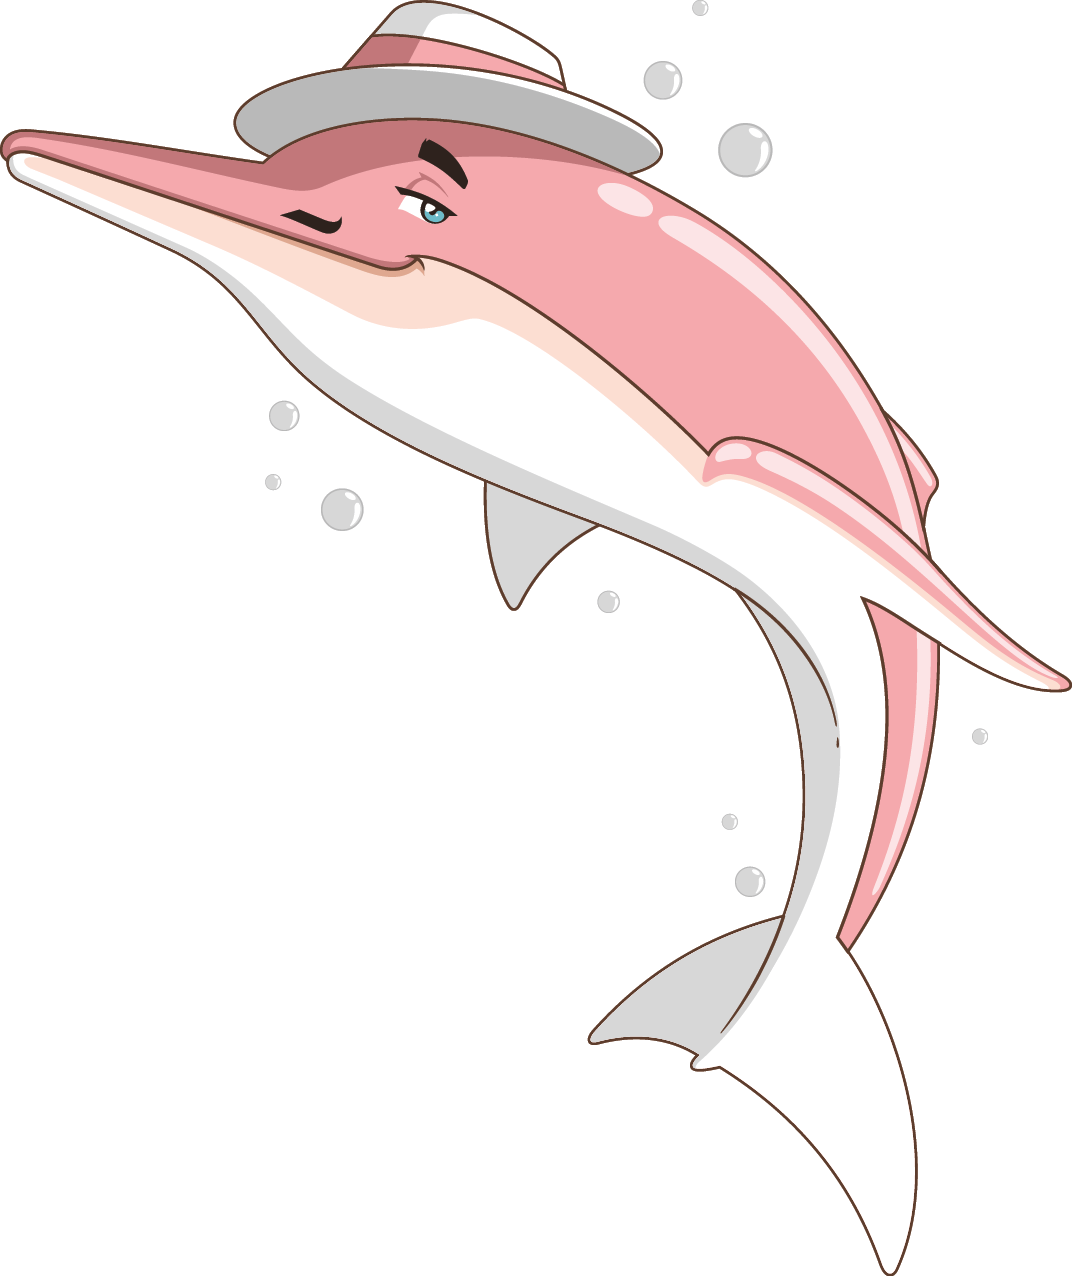 Ilustração. Um boto cor-de-rosa, animal com o corpo de formato similar a um golfinho, com o dorso em rosa, parte inferior do corpo em rosa-claro e branco, olhos em azul, sobrancelhas e um bigode pequeno em preto. Sobre a cabeça, um chapéu branco, com faixa ao meio em rosa. Ao redor do corpo, bolhas em cinza.